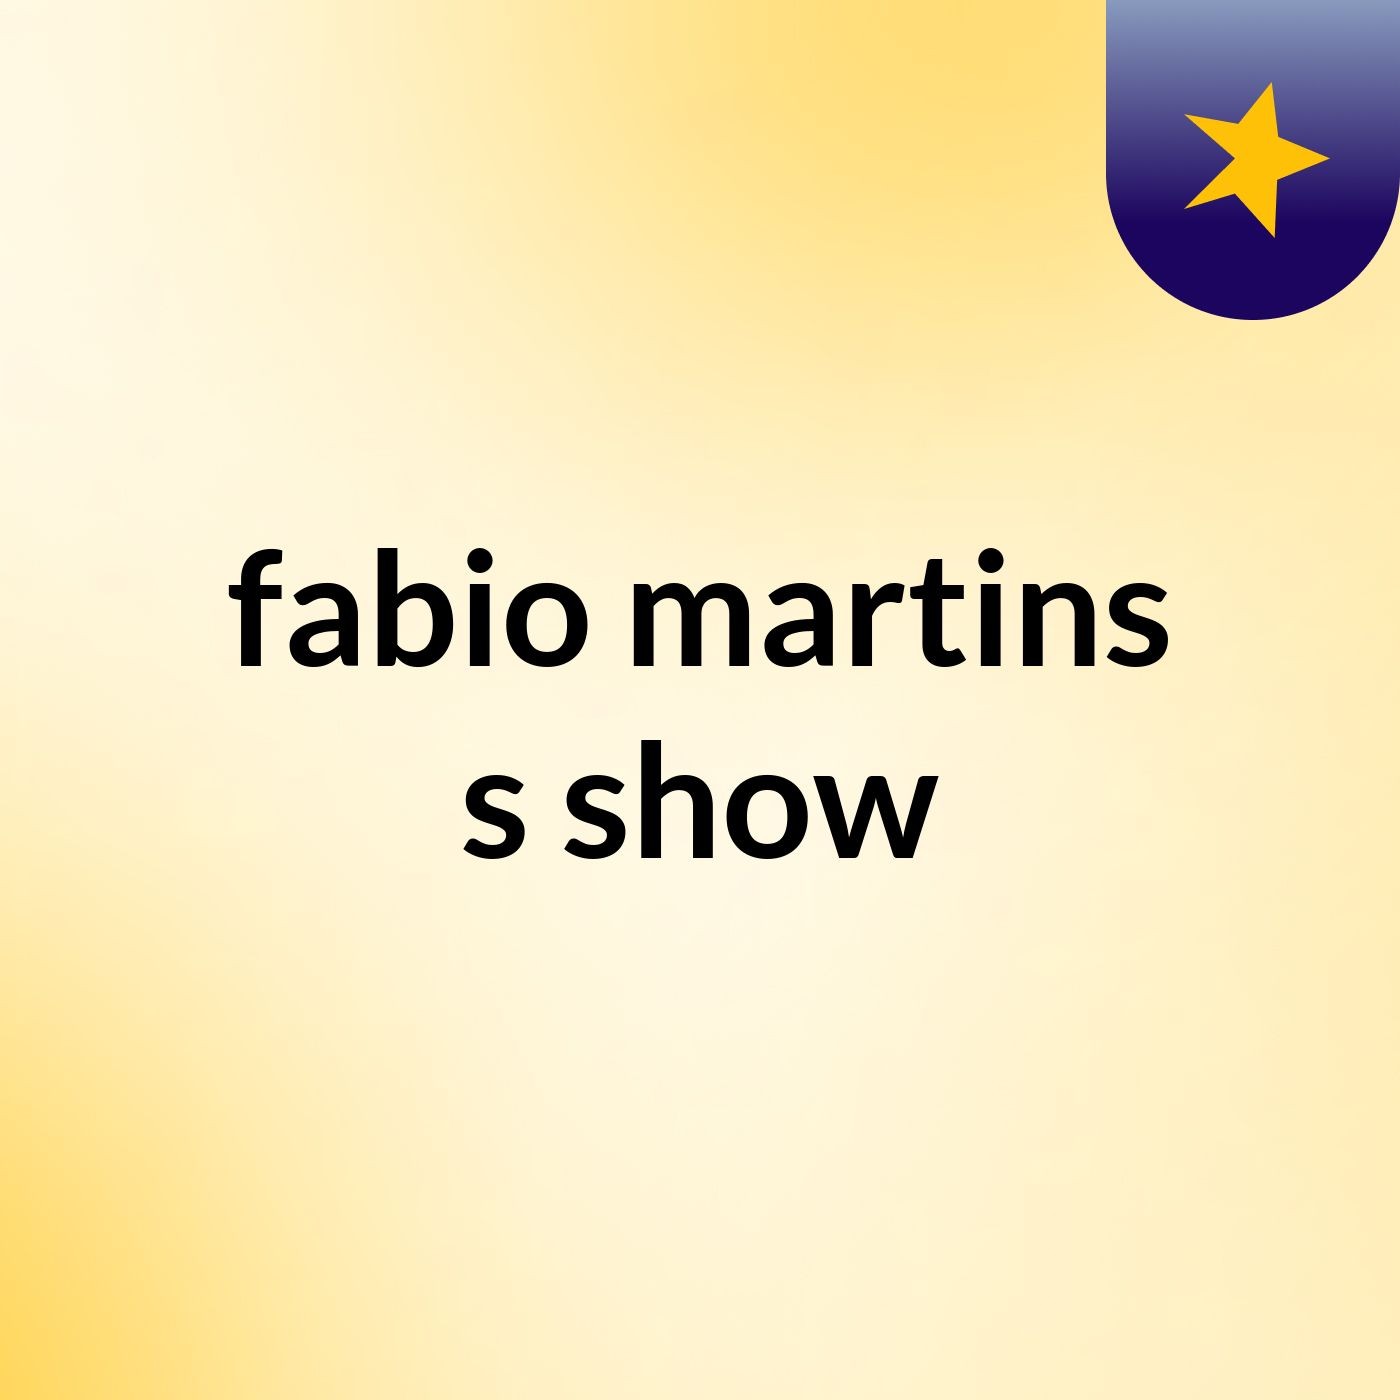 fabio martins's show